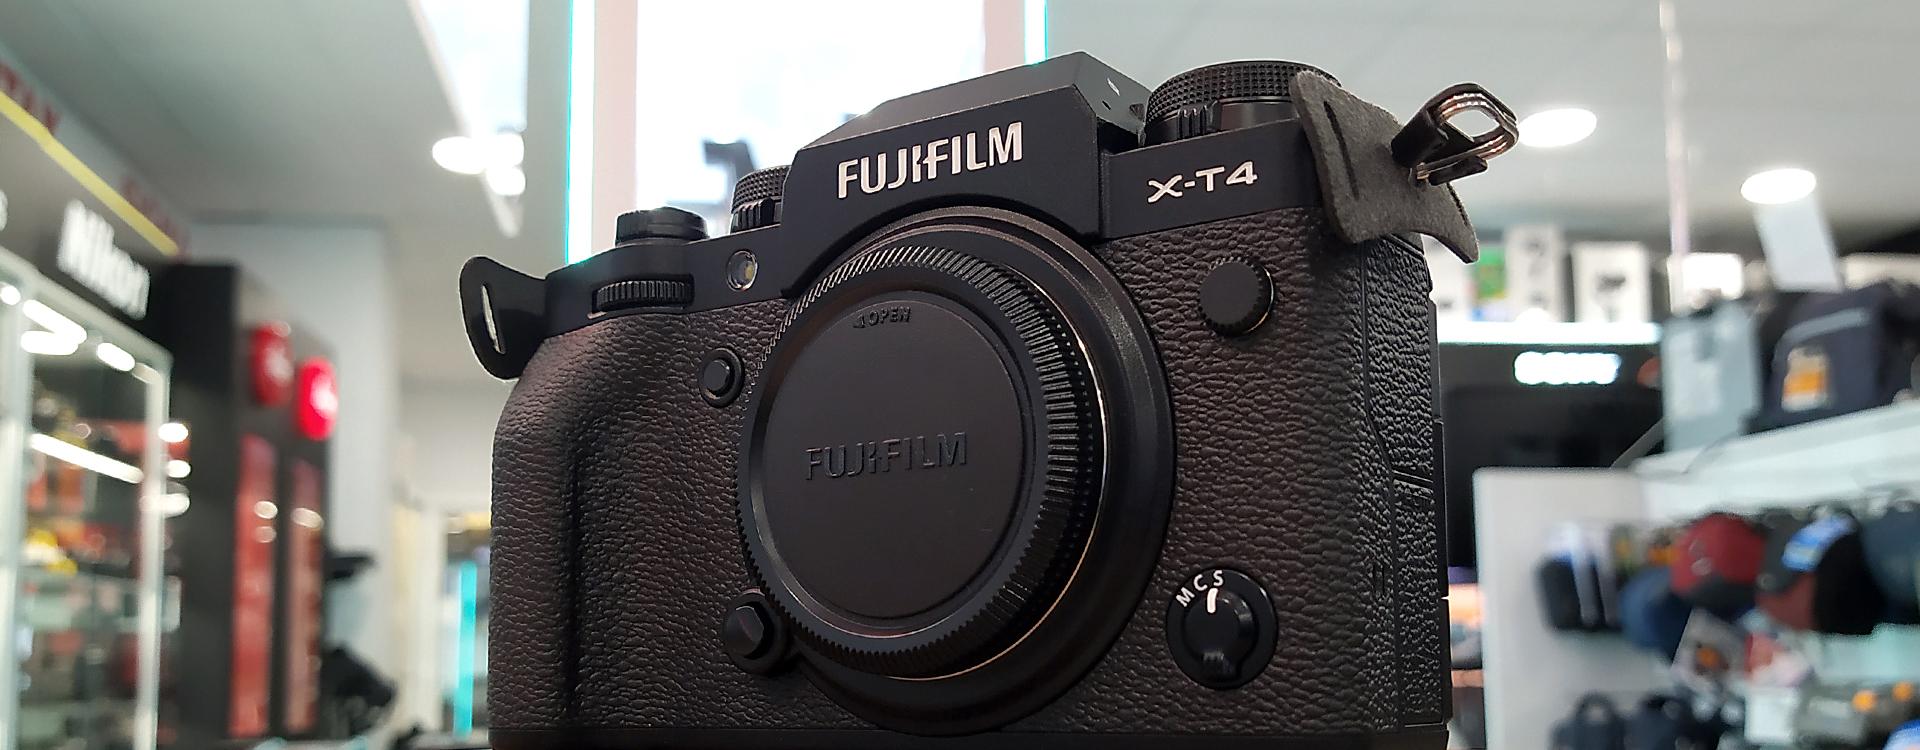 Fujifilm X-T4: Review, características y nuestra opinión tras probarla